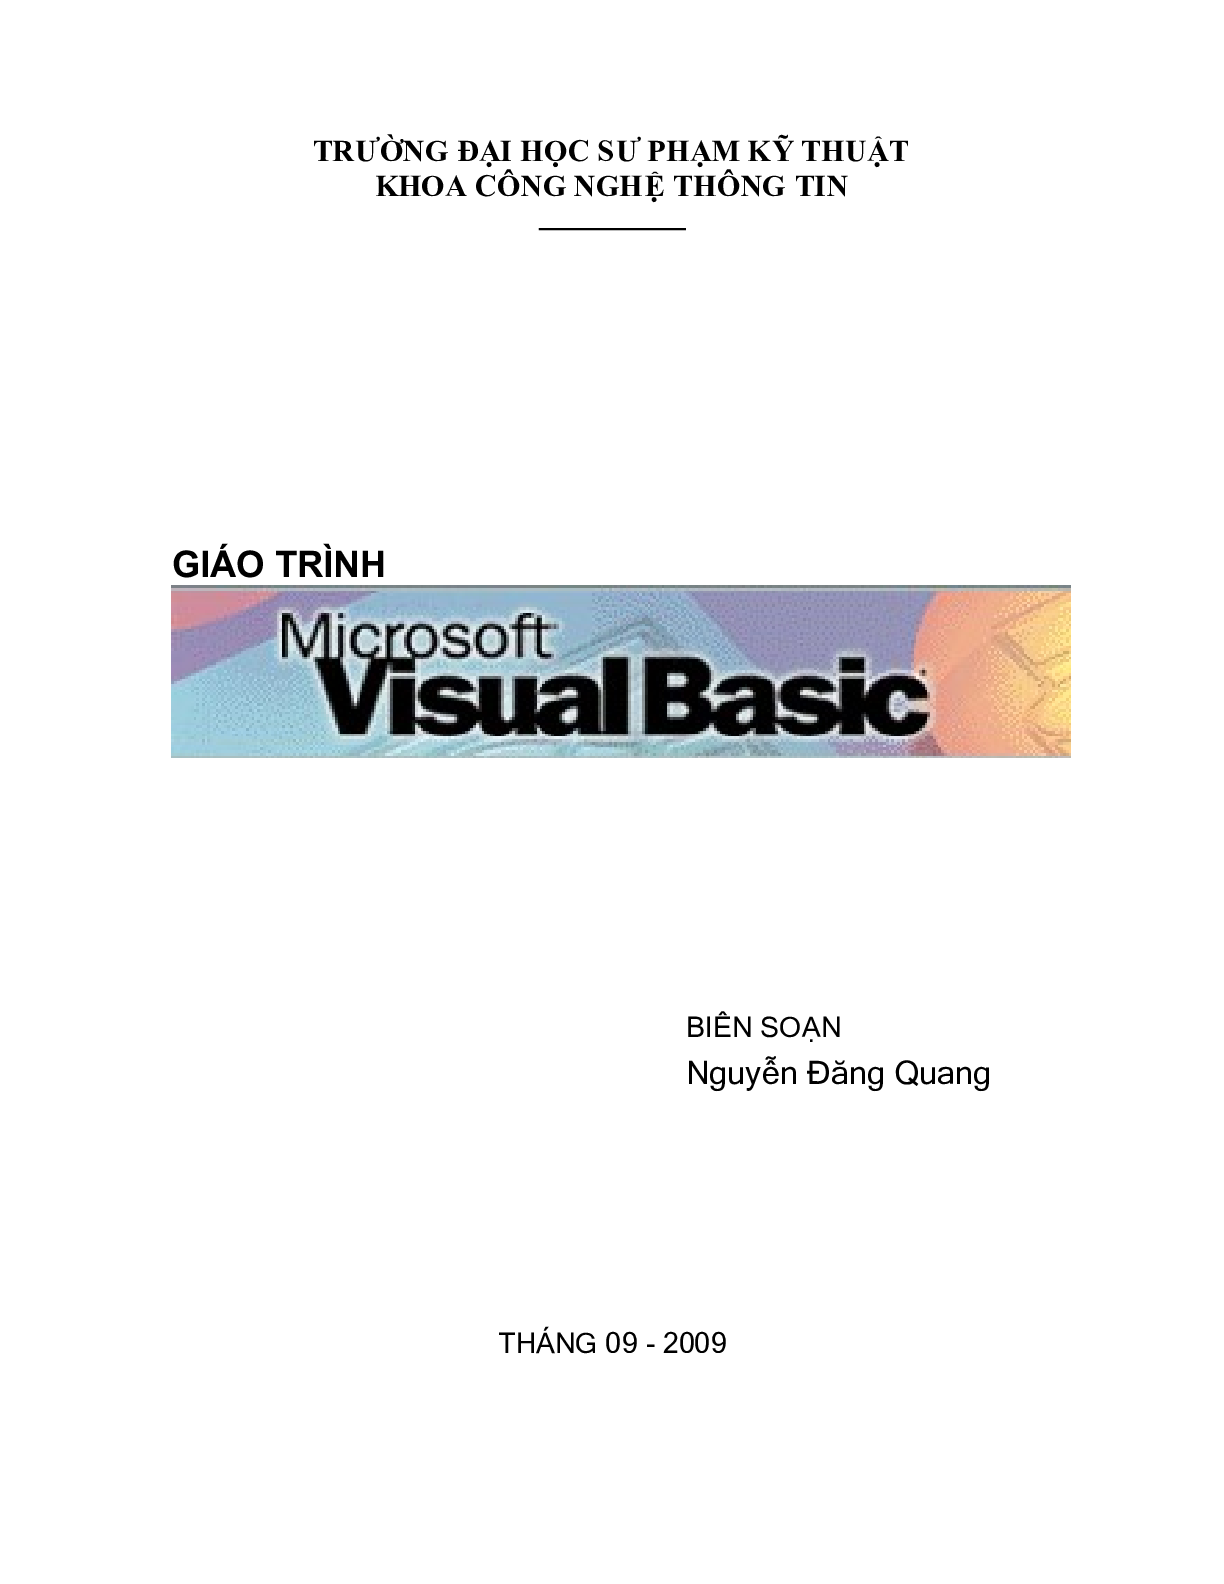 Giáo trình Visual basic 6.0 | Trường Đại học Sư phạm Kỹ thuật Thành phố Hồ Chí Minh (trang 1)